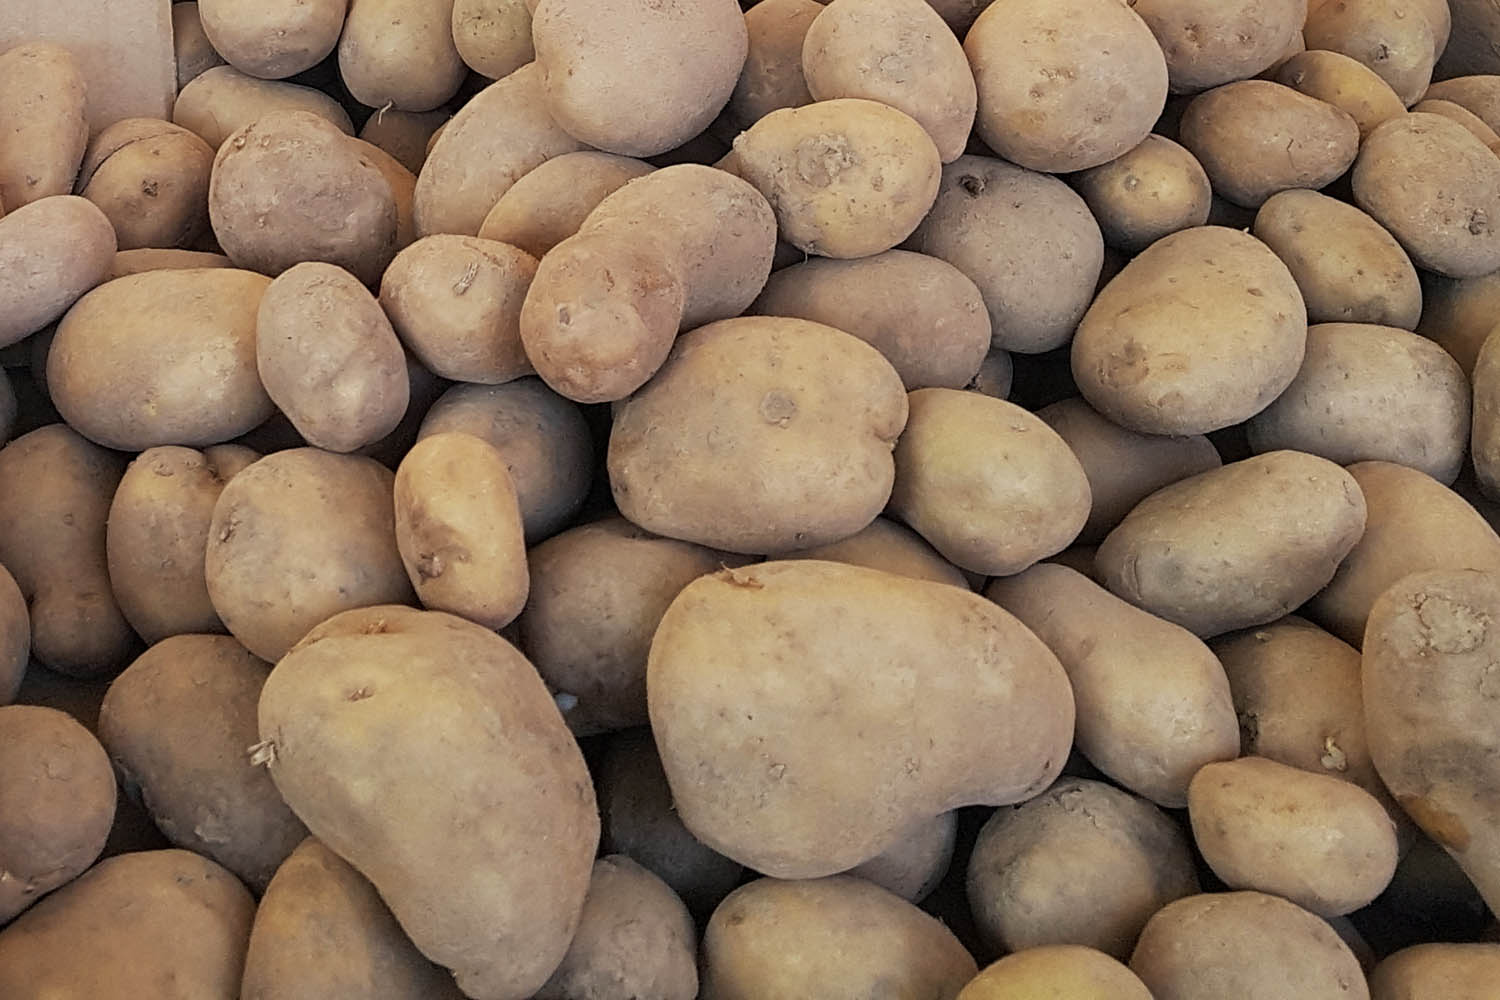 Jak przechowywać ziemniaki?